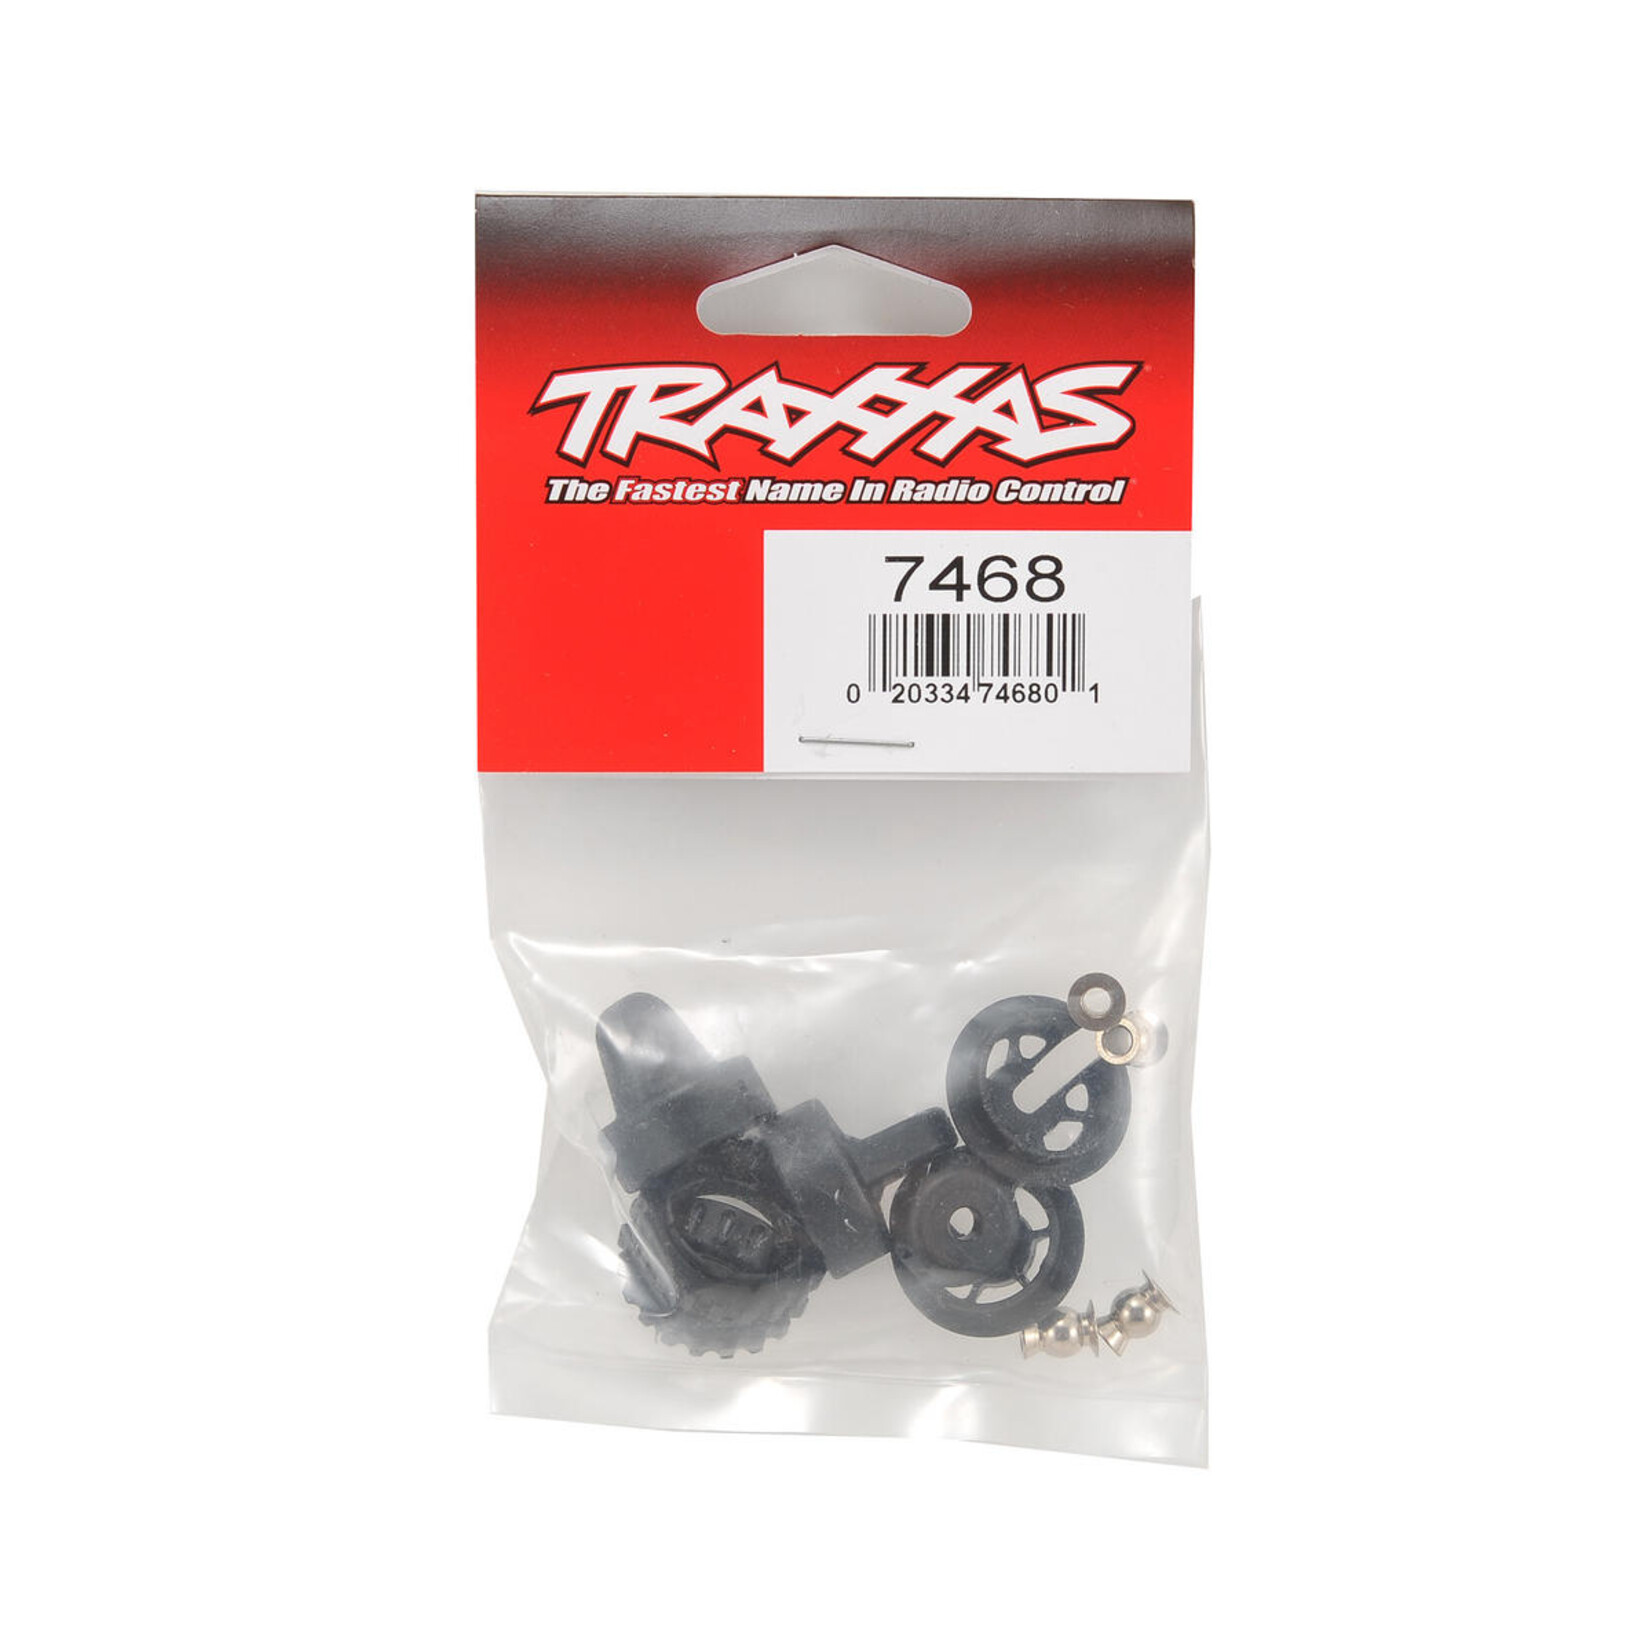 Traxxas Traxxas GTR Shock Cap & Spring Retainer Set #7468